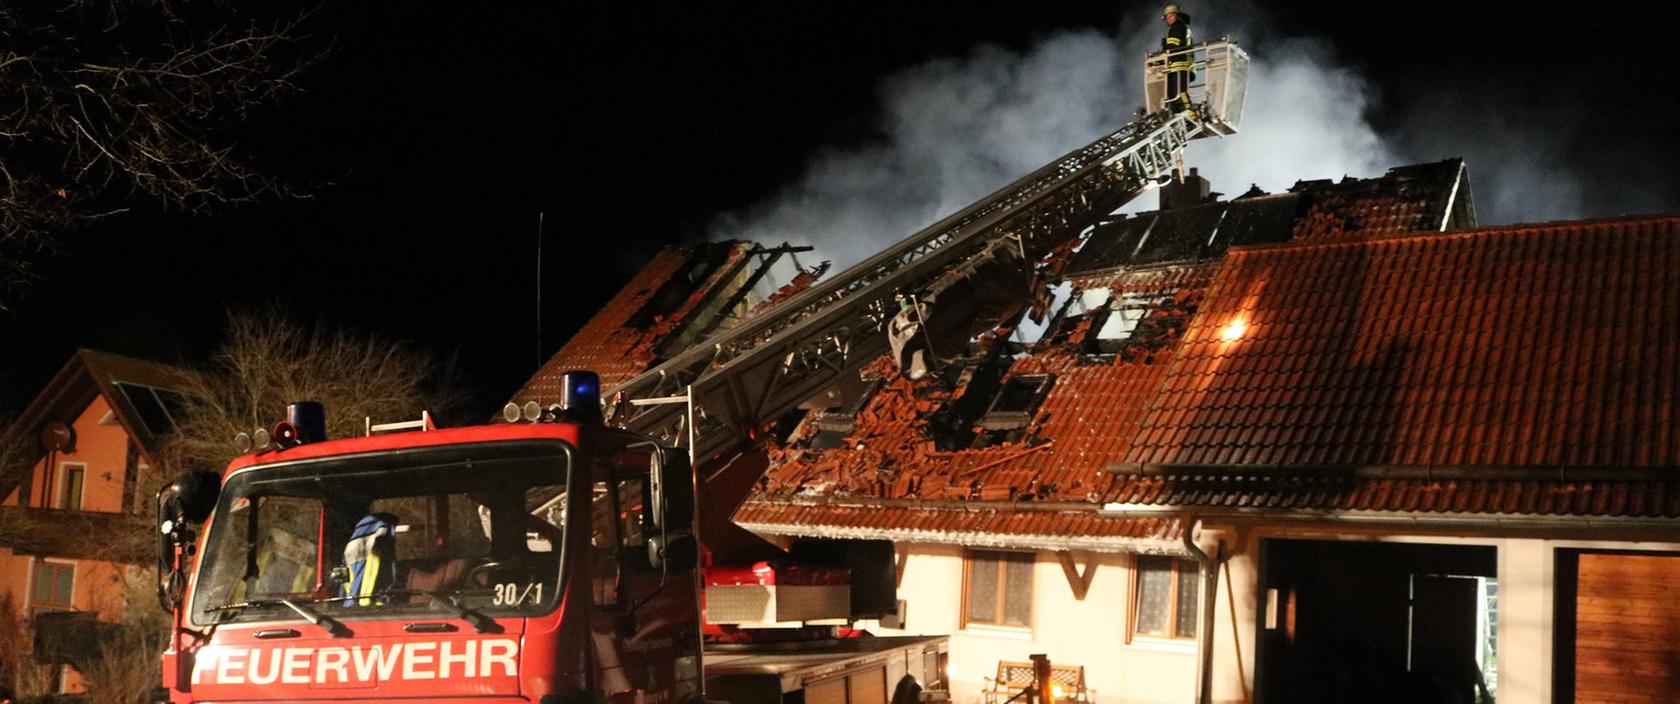 Über 60 Feuerwehrleute versuchten den Brand zu löschen, der starke Wind erschwerte ihre Arbeit.